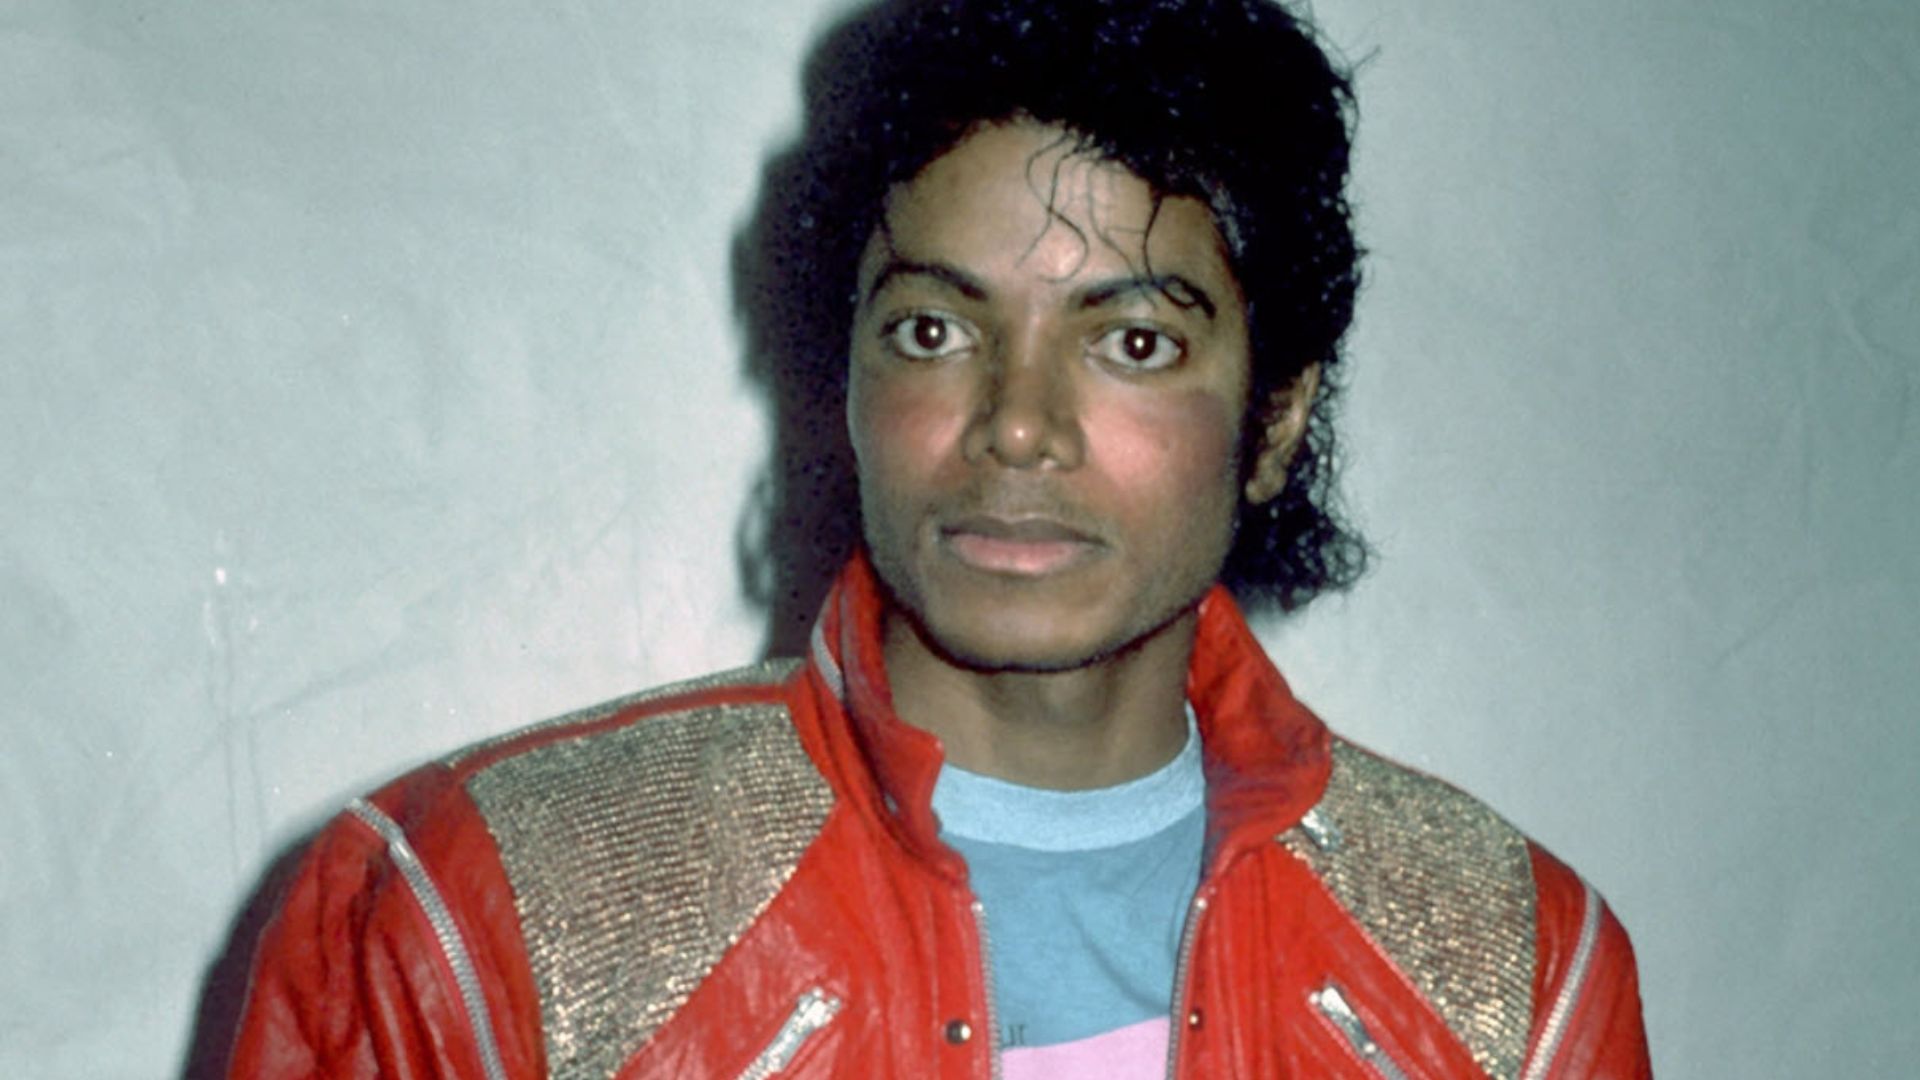 Michael Jackson Wearing An Orange Jacket